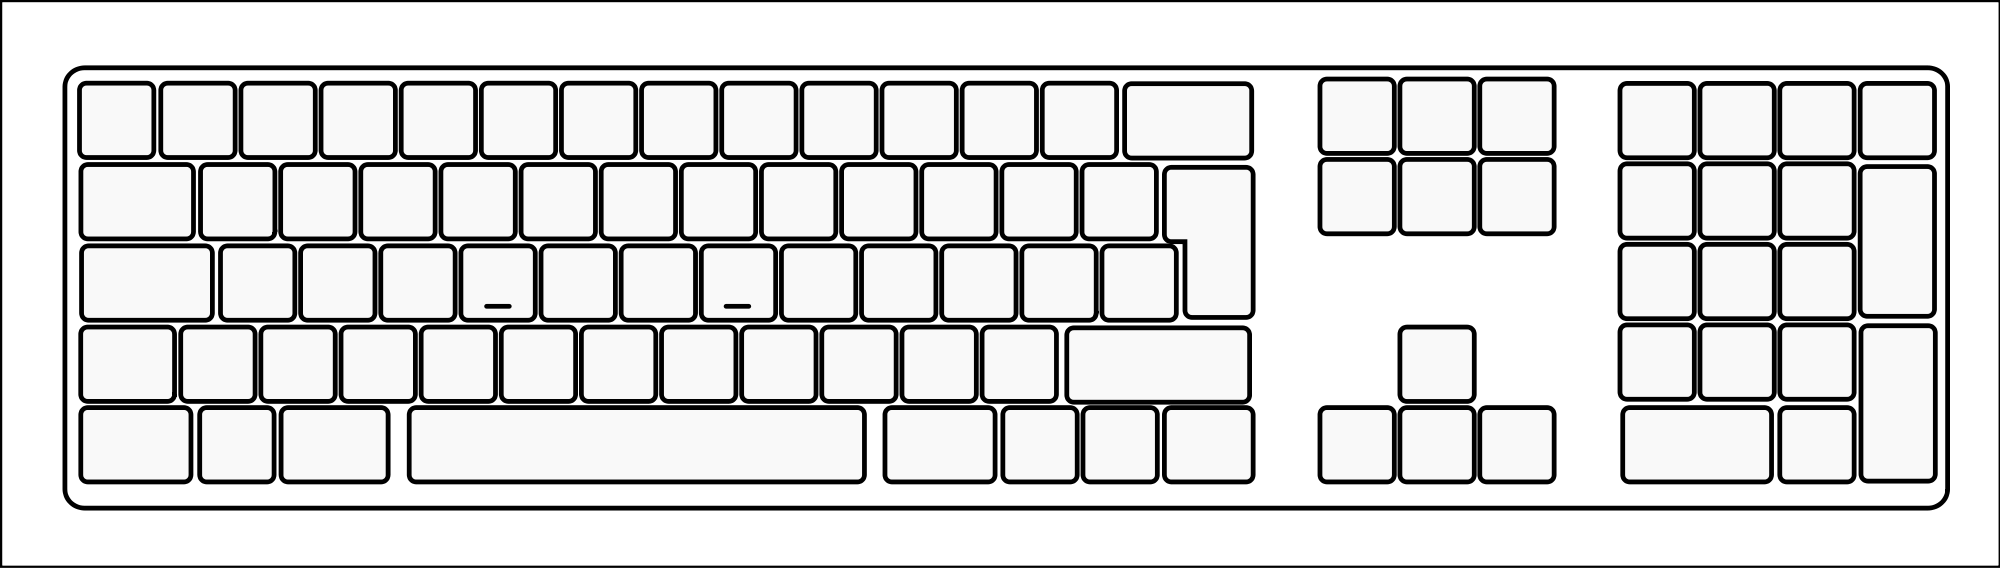 Keyboard standard